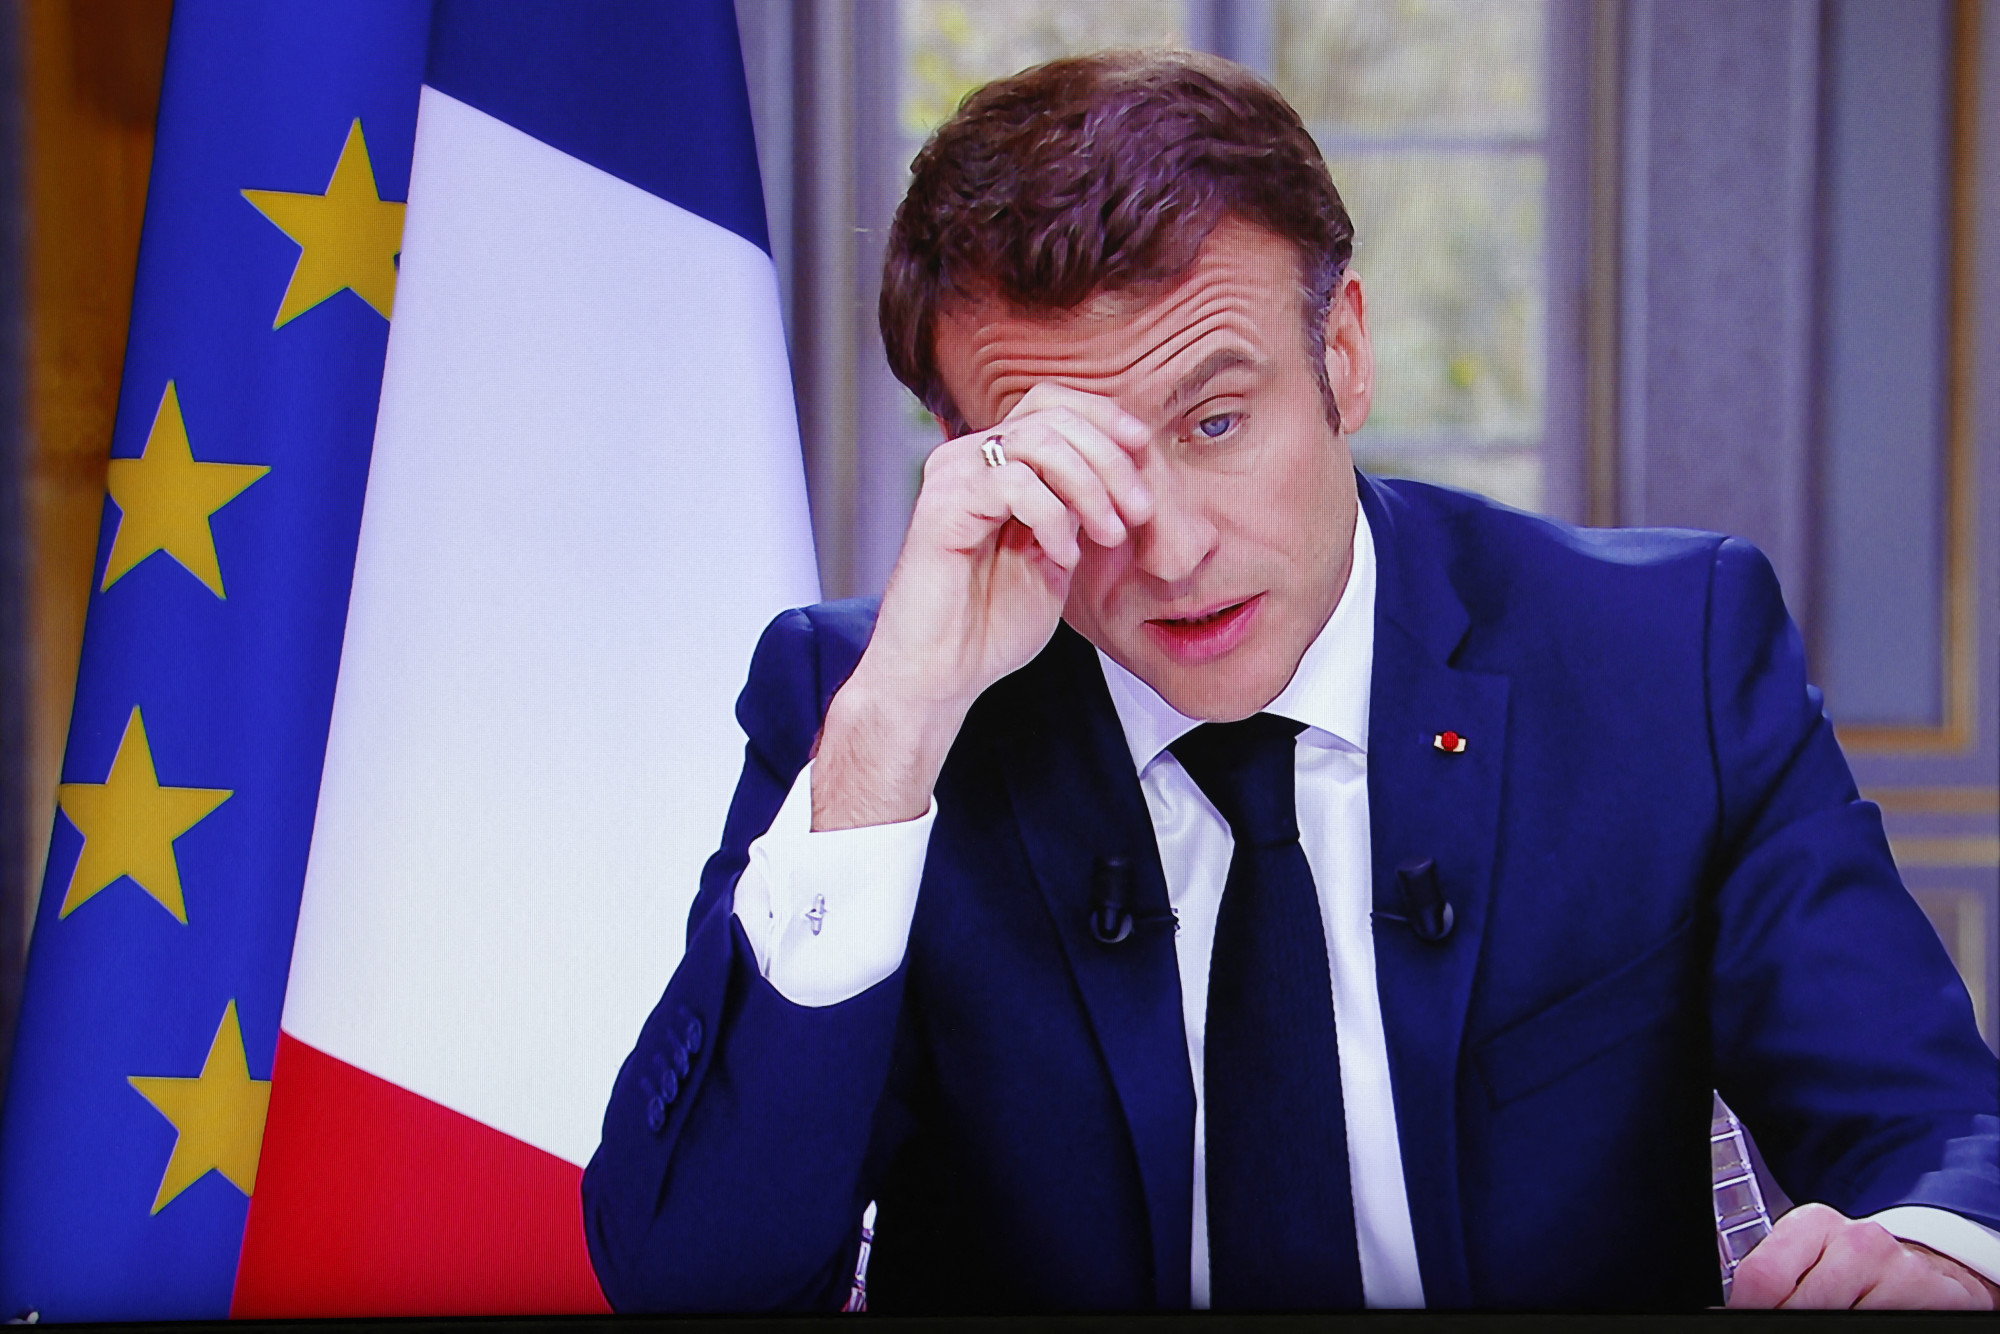 Levágott ujjat küldtek levélben Macronnak